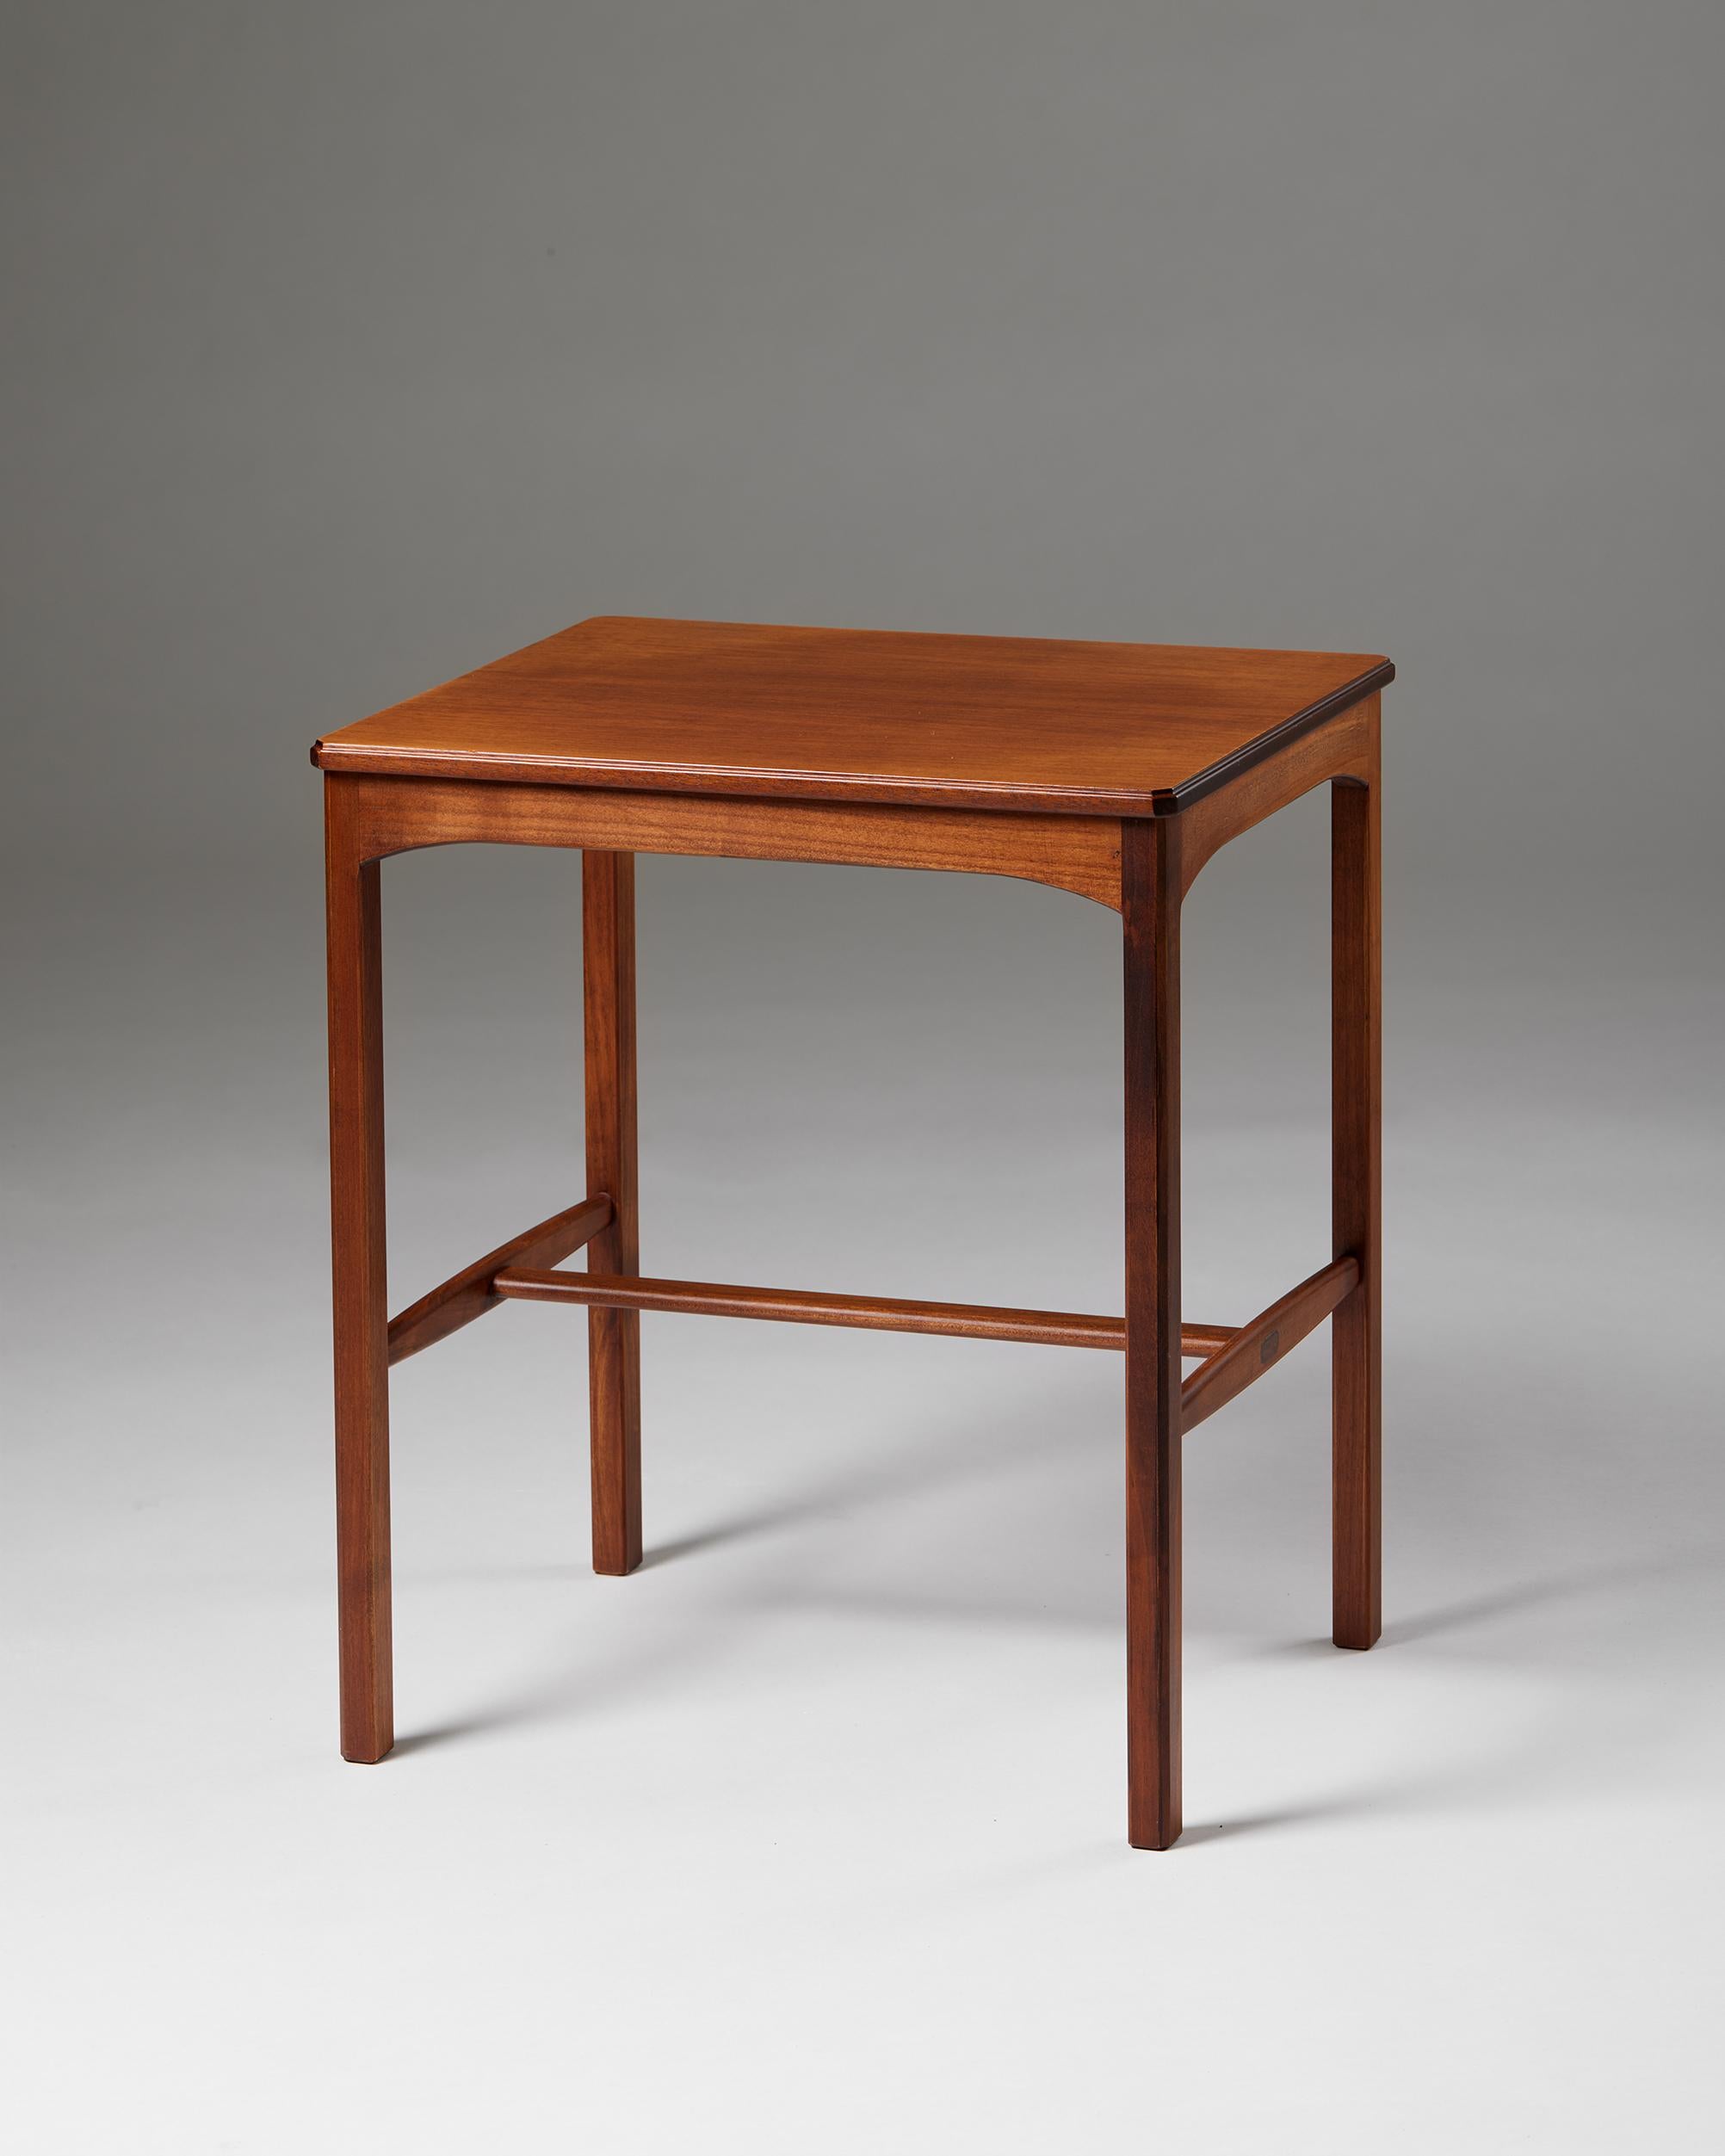 Table d'appoint 'October' conçue par Carl Malmsten, Suède, années 1950

Estampillé.

Noyer.

Carl Malmsten était un designer de meubles, un architecte d'intérieur et un éducateur suédois connu pour son attachement à l'artisanat suédois traditionnel.